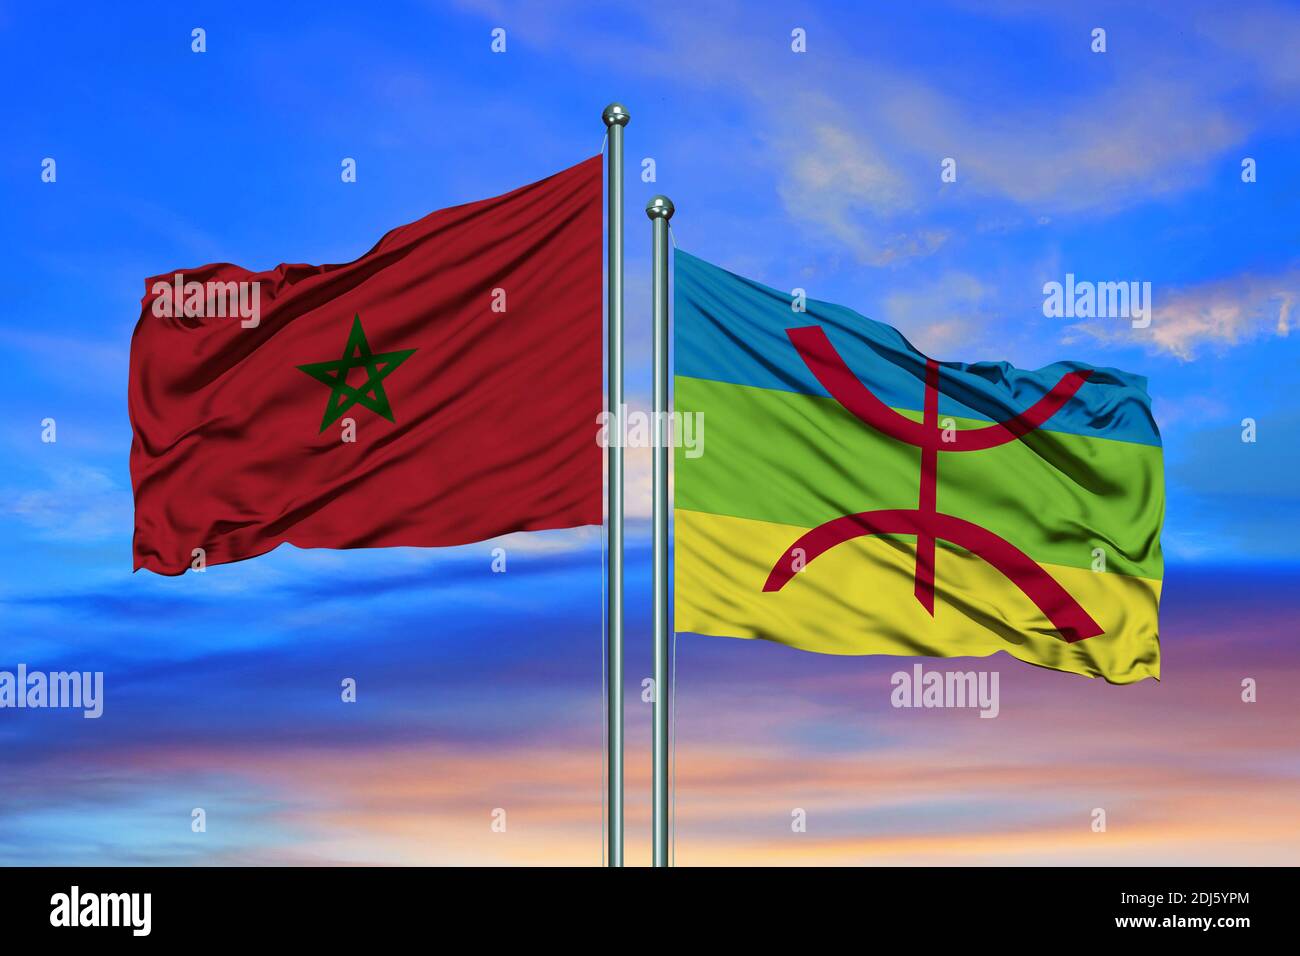 Drapeau du Maroc et Berbères agitant ensemble dans le bleu ciel Banque D'Images